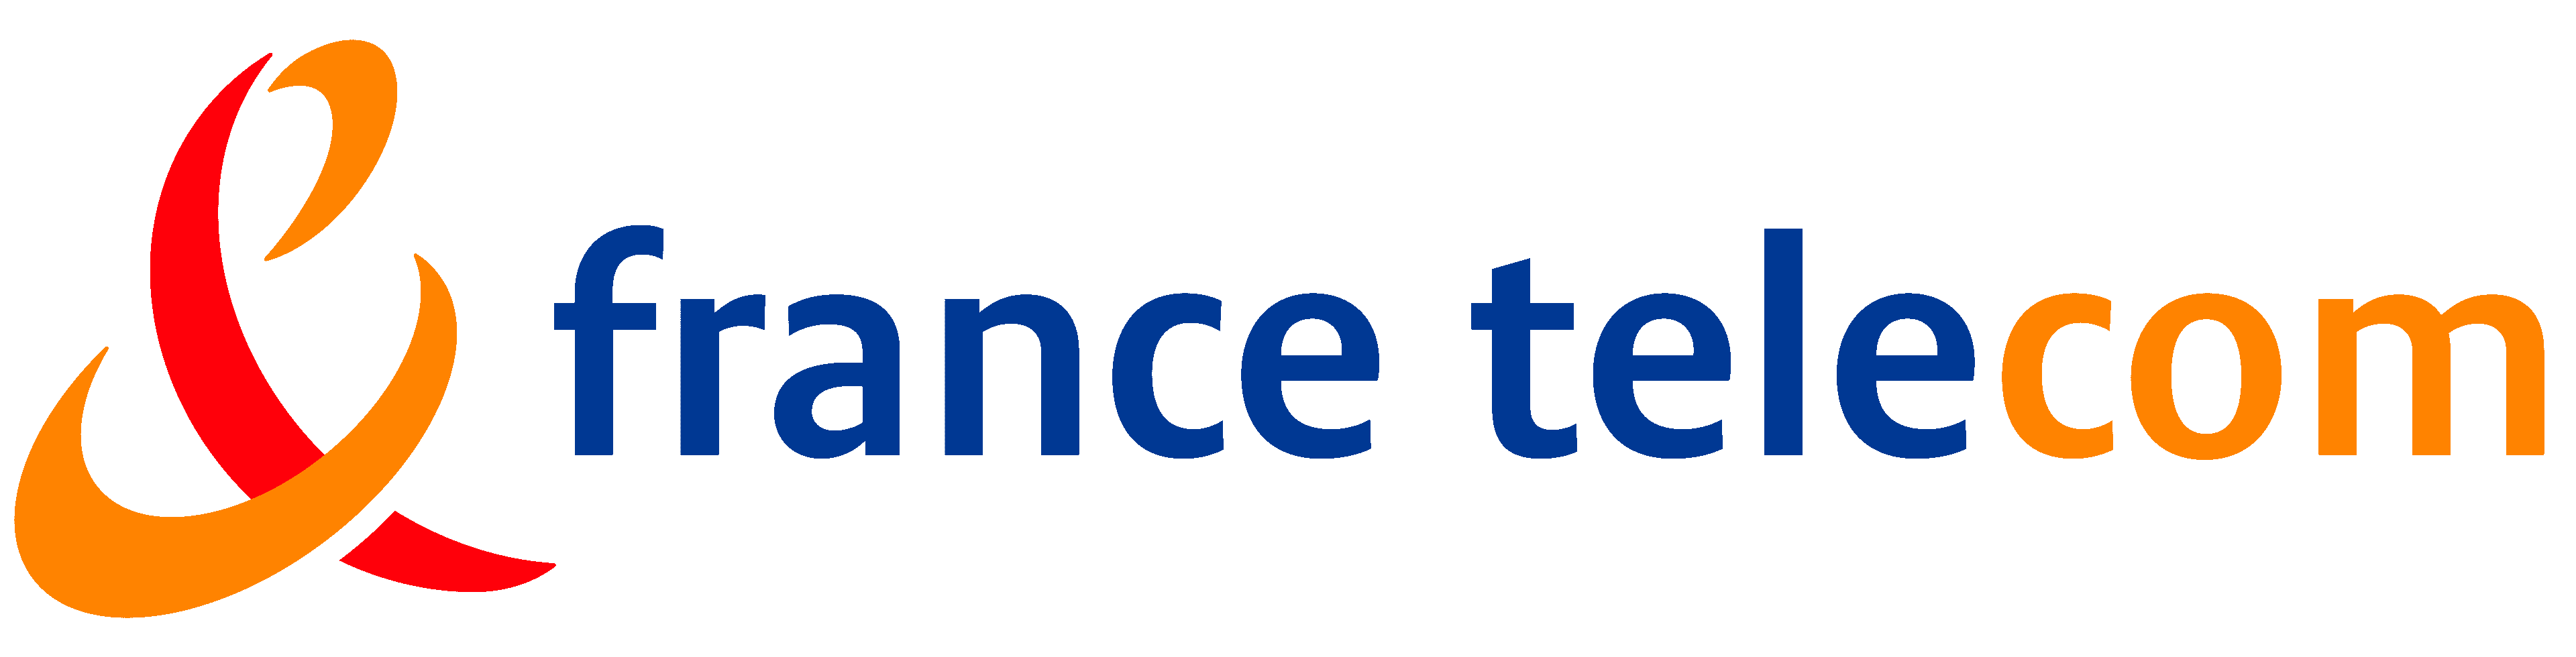 France-Telecom-Logo-2000-2006